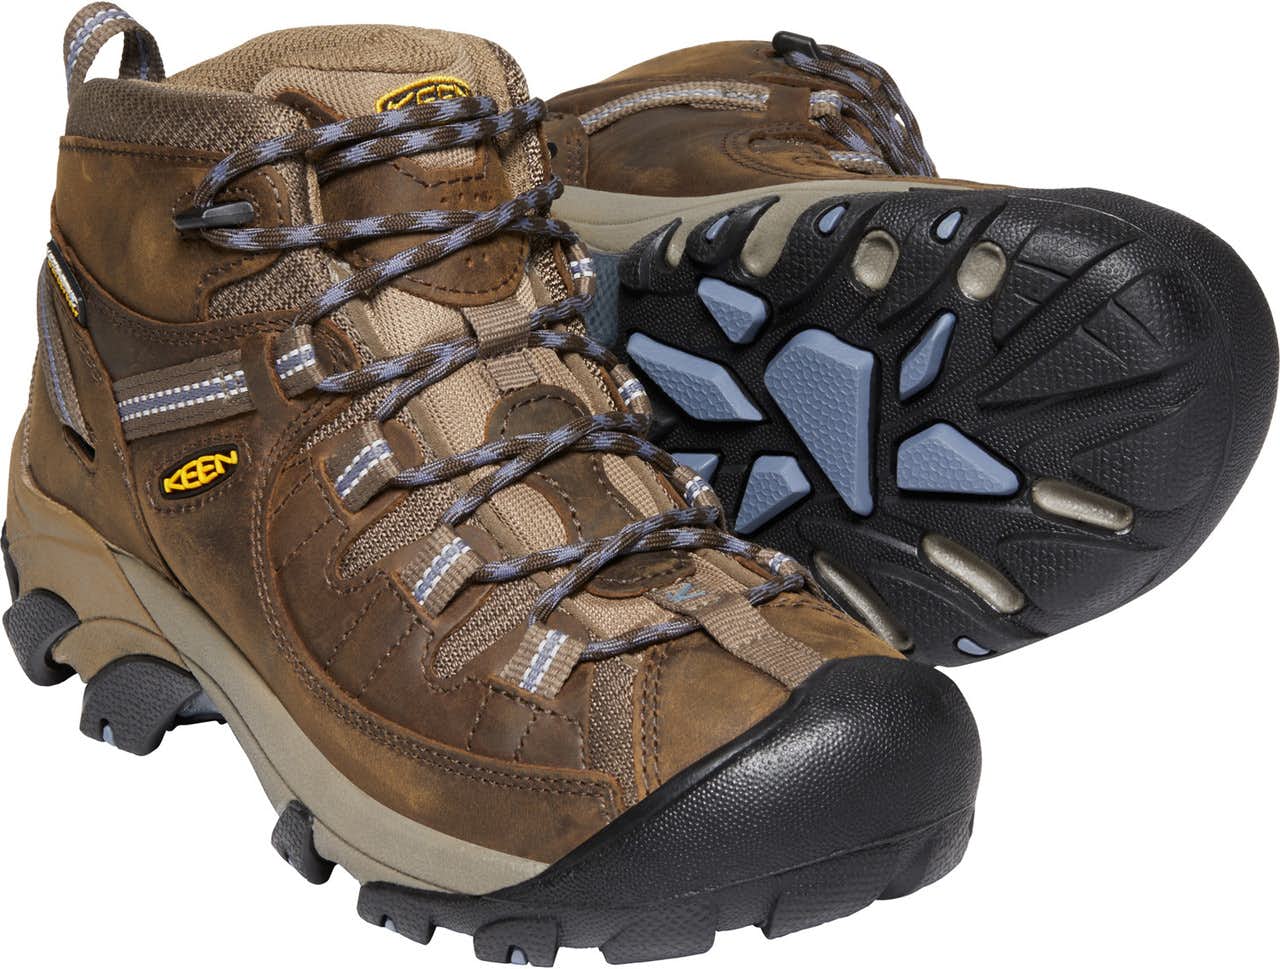 Targhee II Mid Waterproof Light Trail Shoes Slate Black/Flint Stone